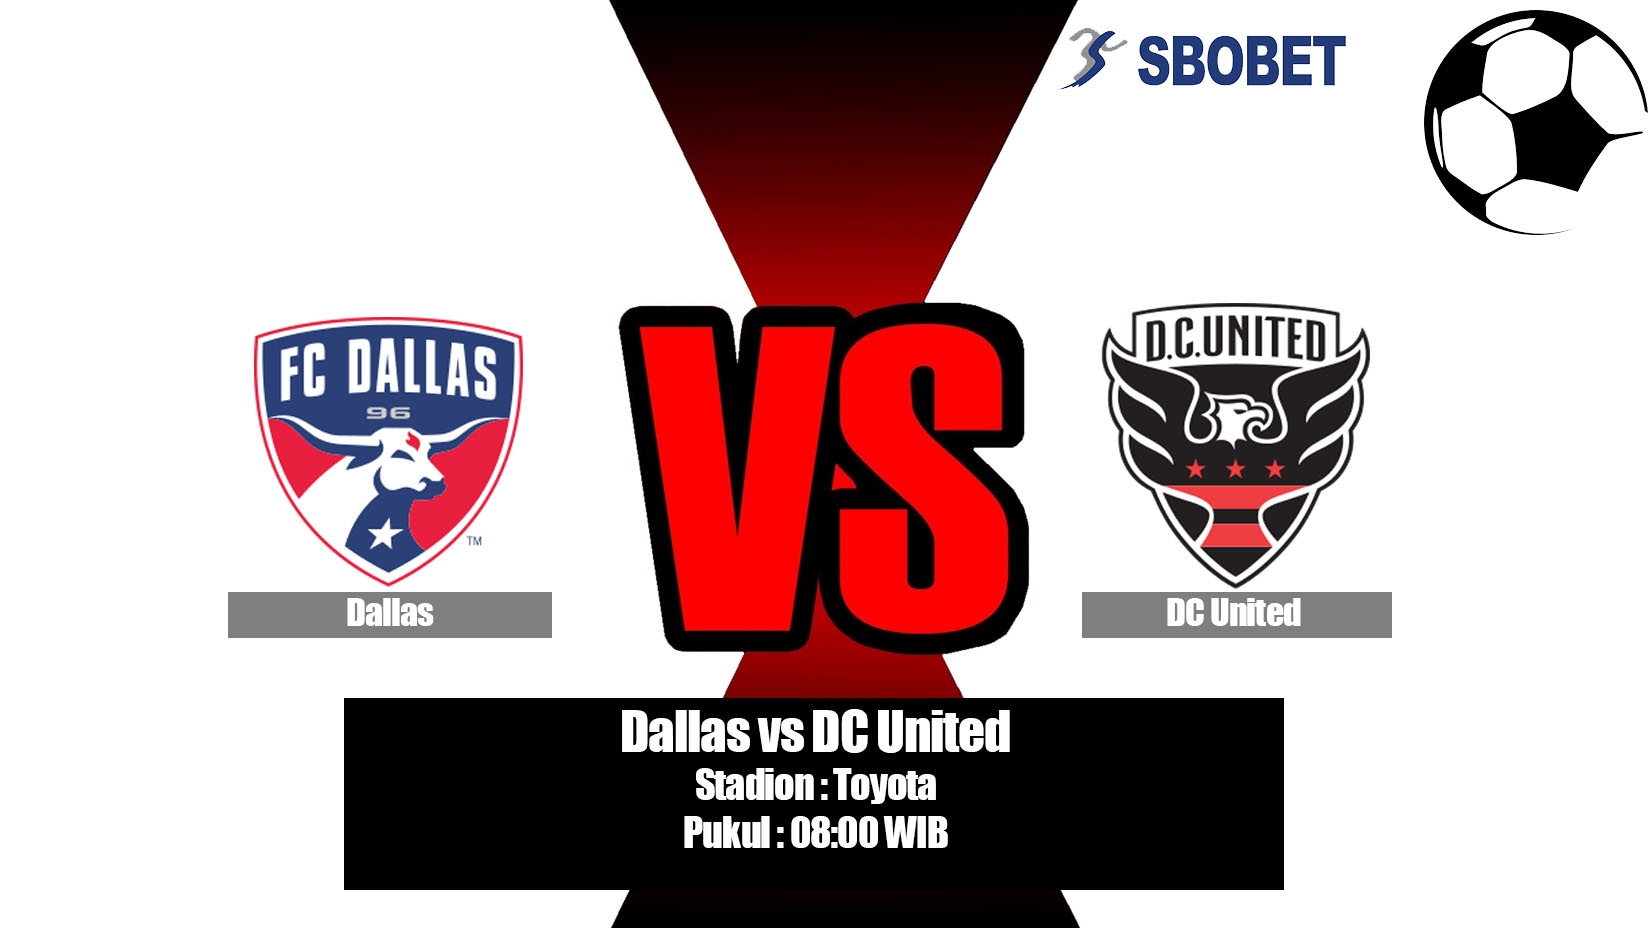 Prediksi Bola Dallas vs DC United 5 Juli 2019